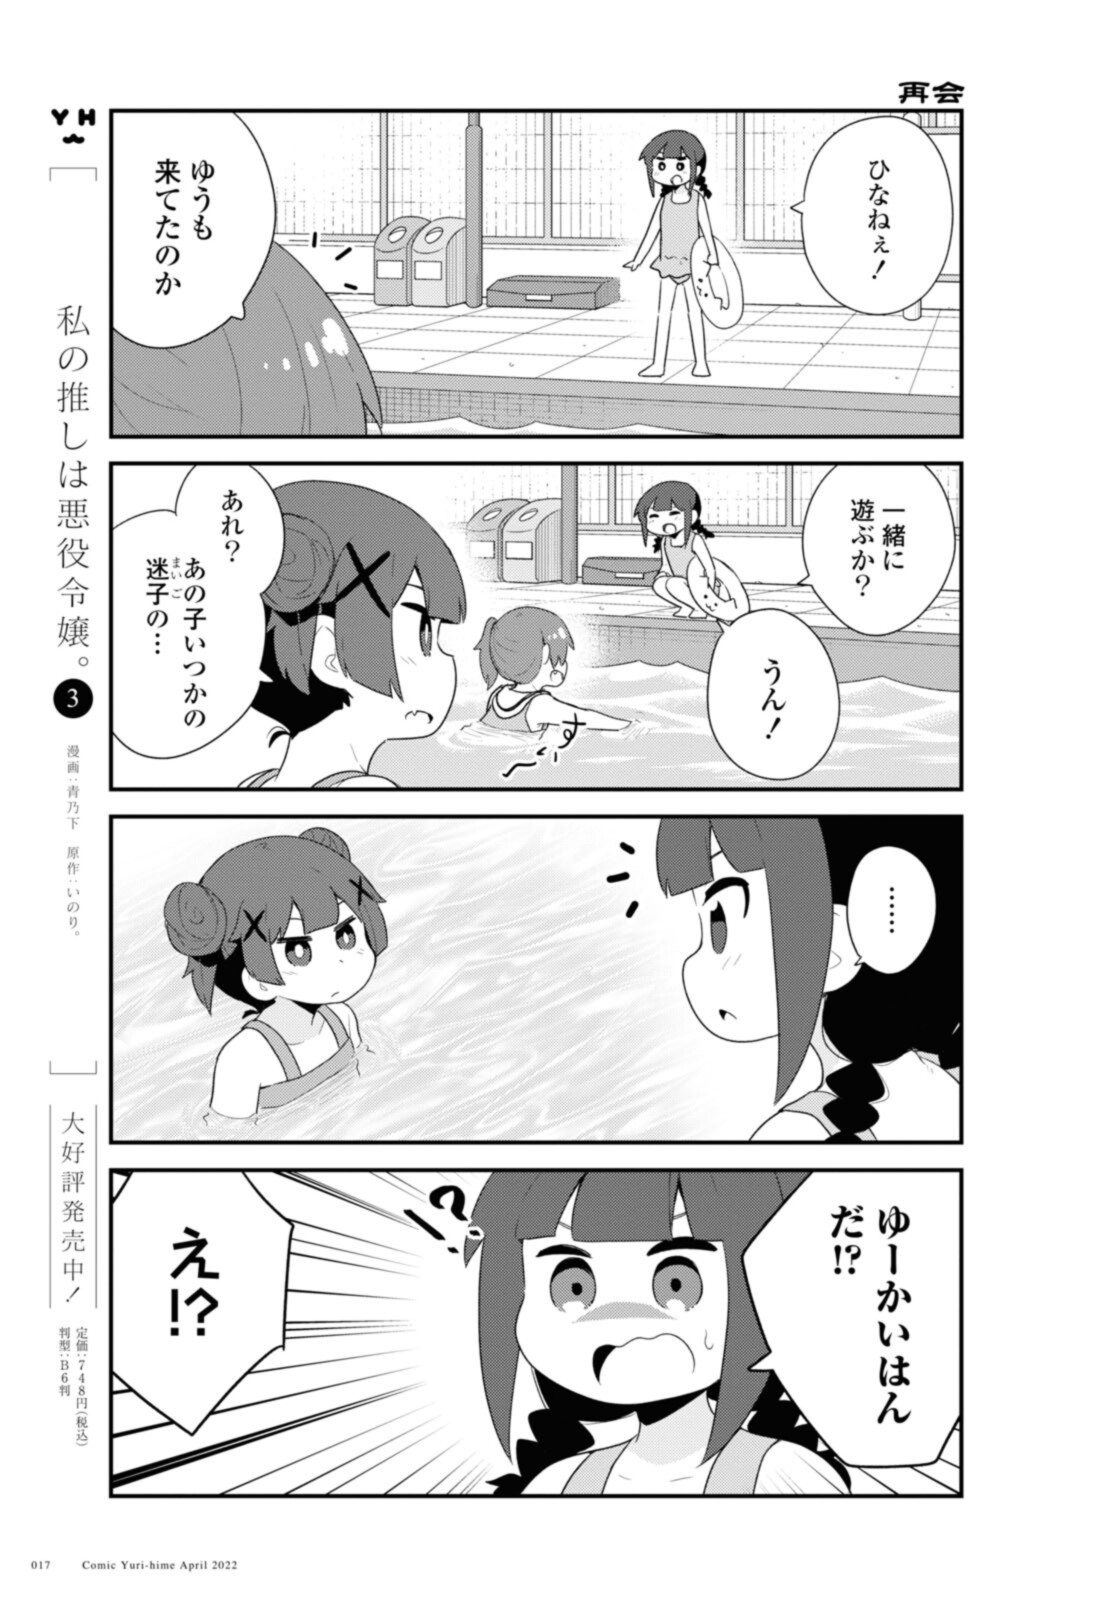 Watashi ni Tenshi ga Maiorita! - Chapter 94.2 - Page 3